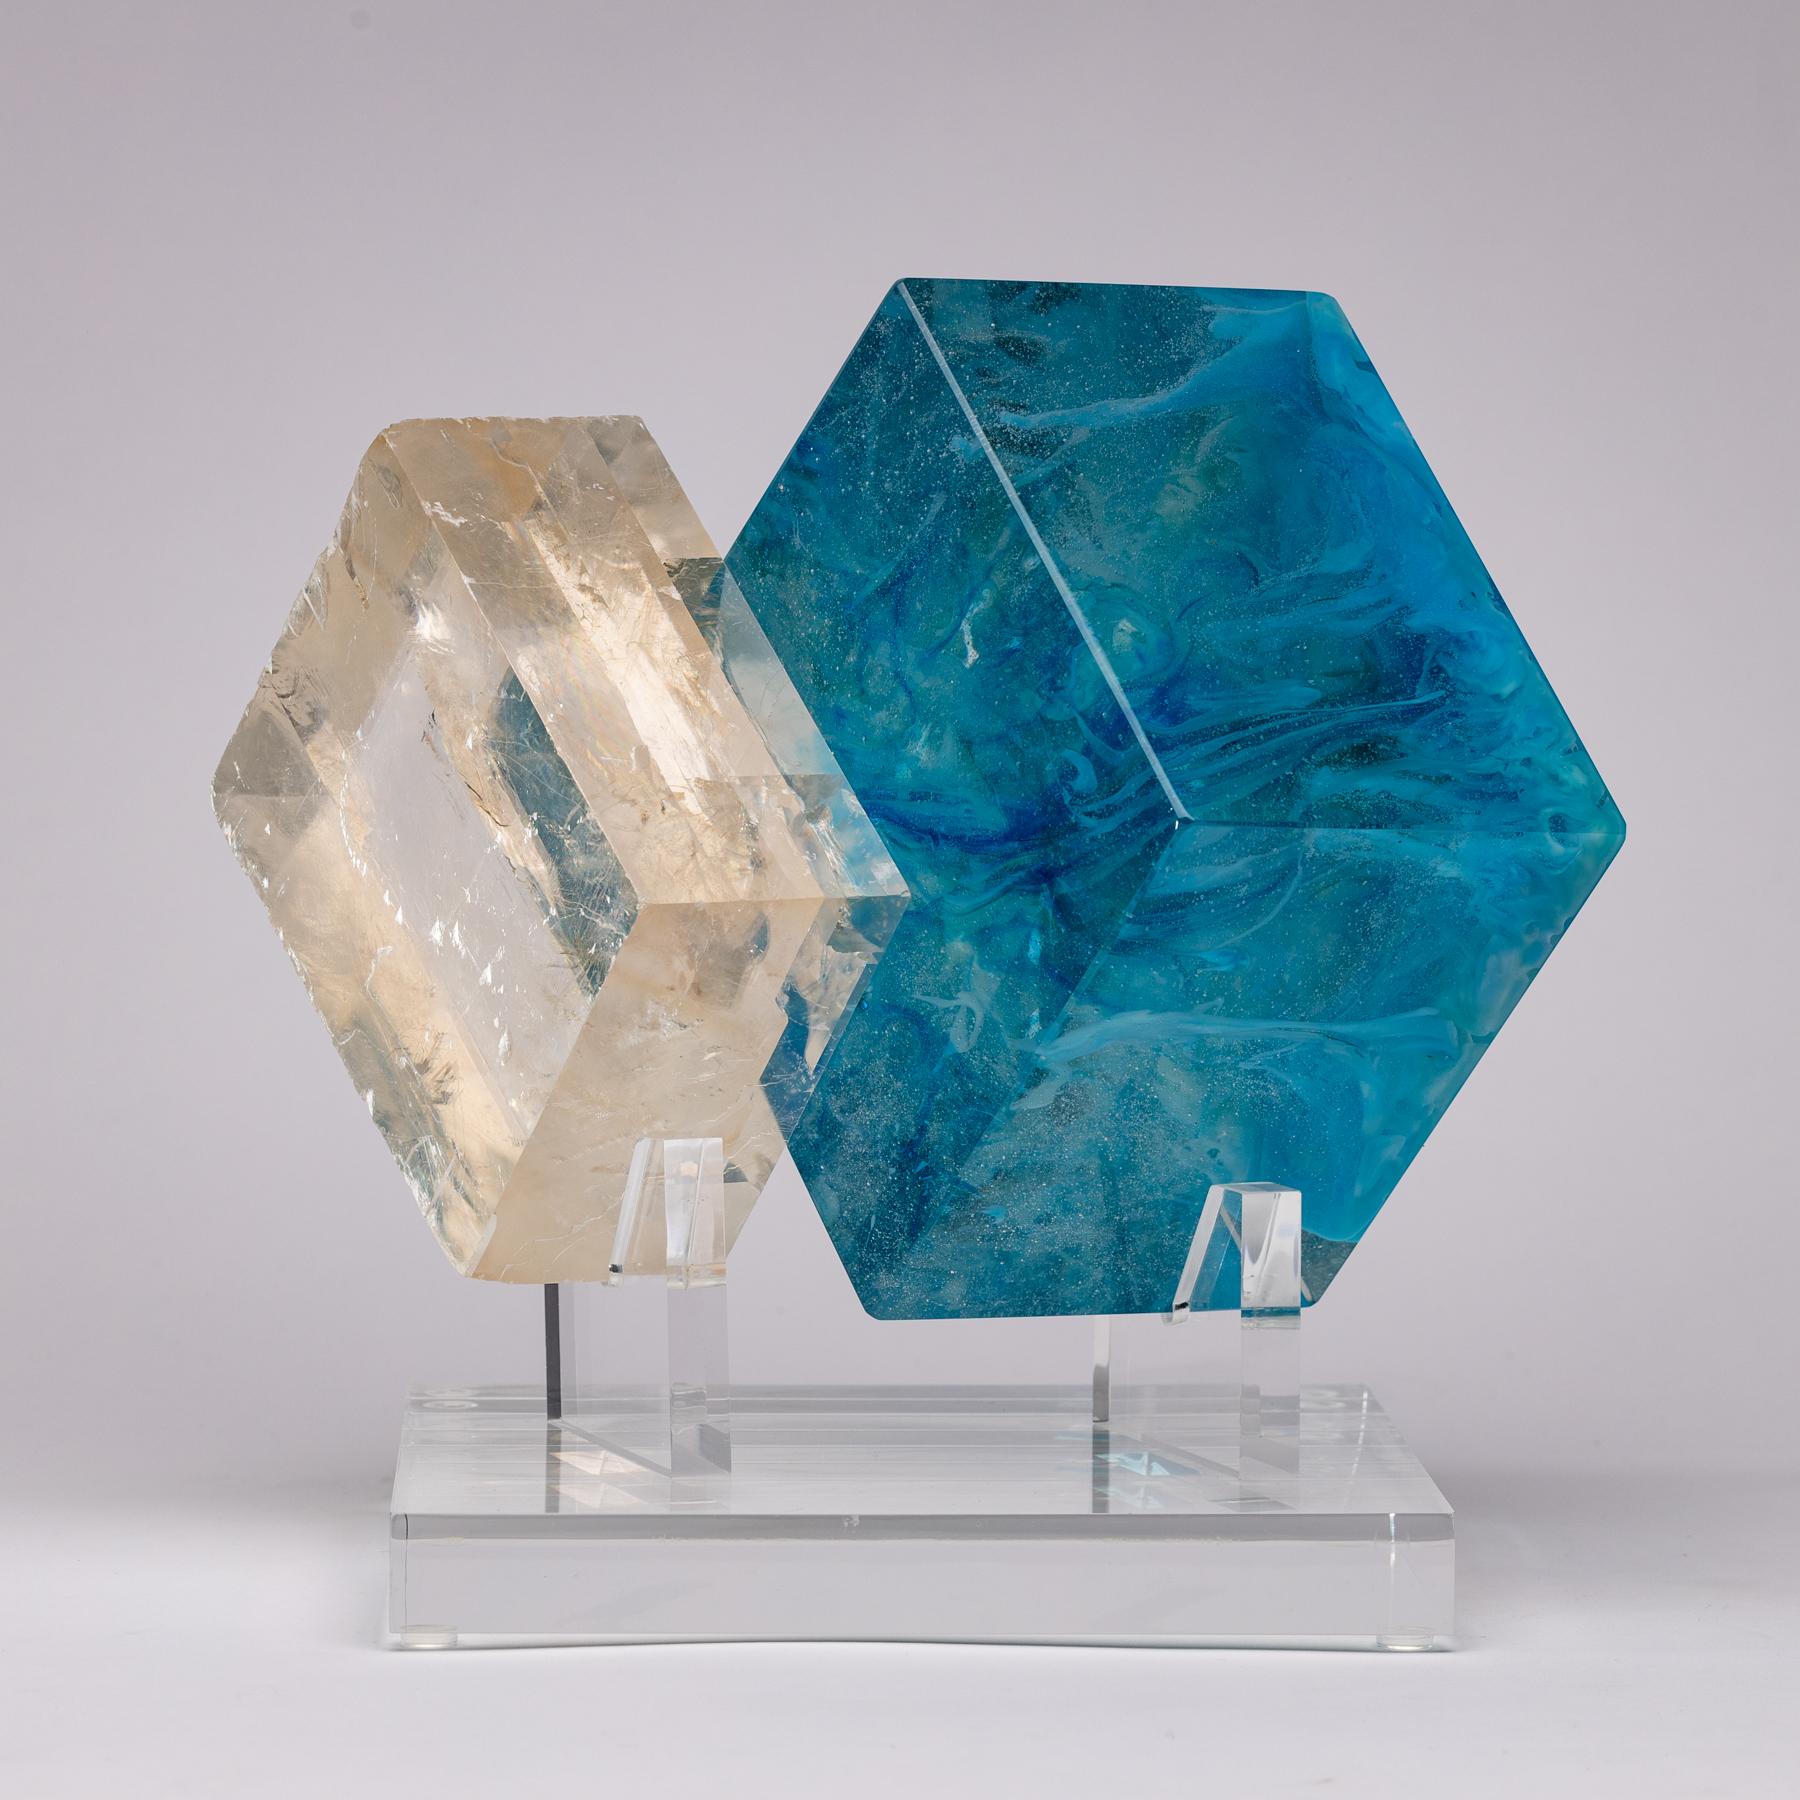 Cubes blues, sculpture optique en calcite et verre de la collection TYME, une collaboration entre Orfeo Quagliata et Ernesto Durán

Collection TYME 
Une danse entre la pureté et le détail donne lieu à la création de pièces uniques fusionnant les